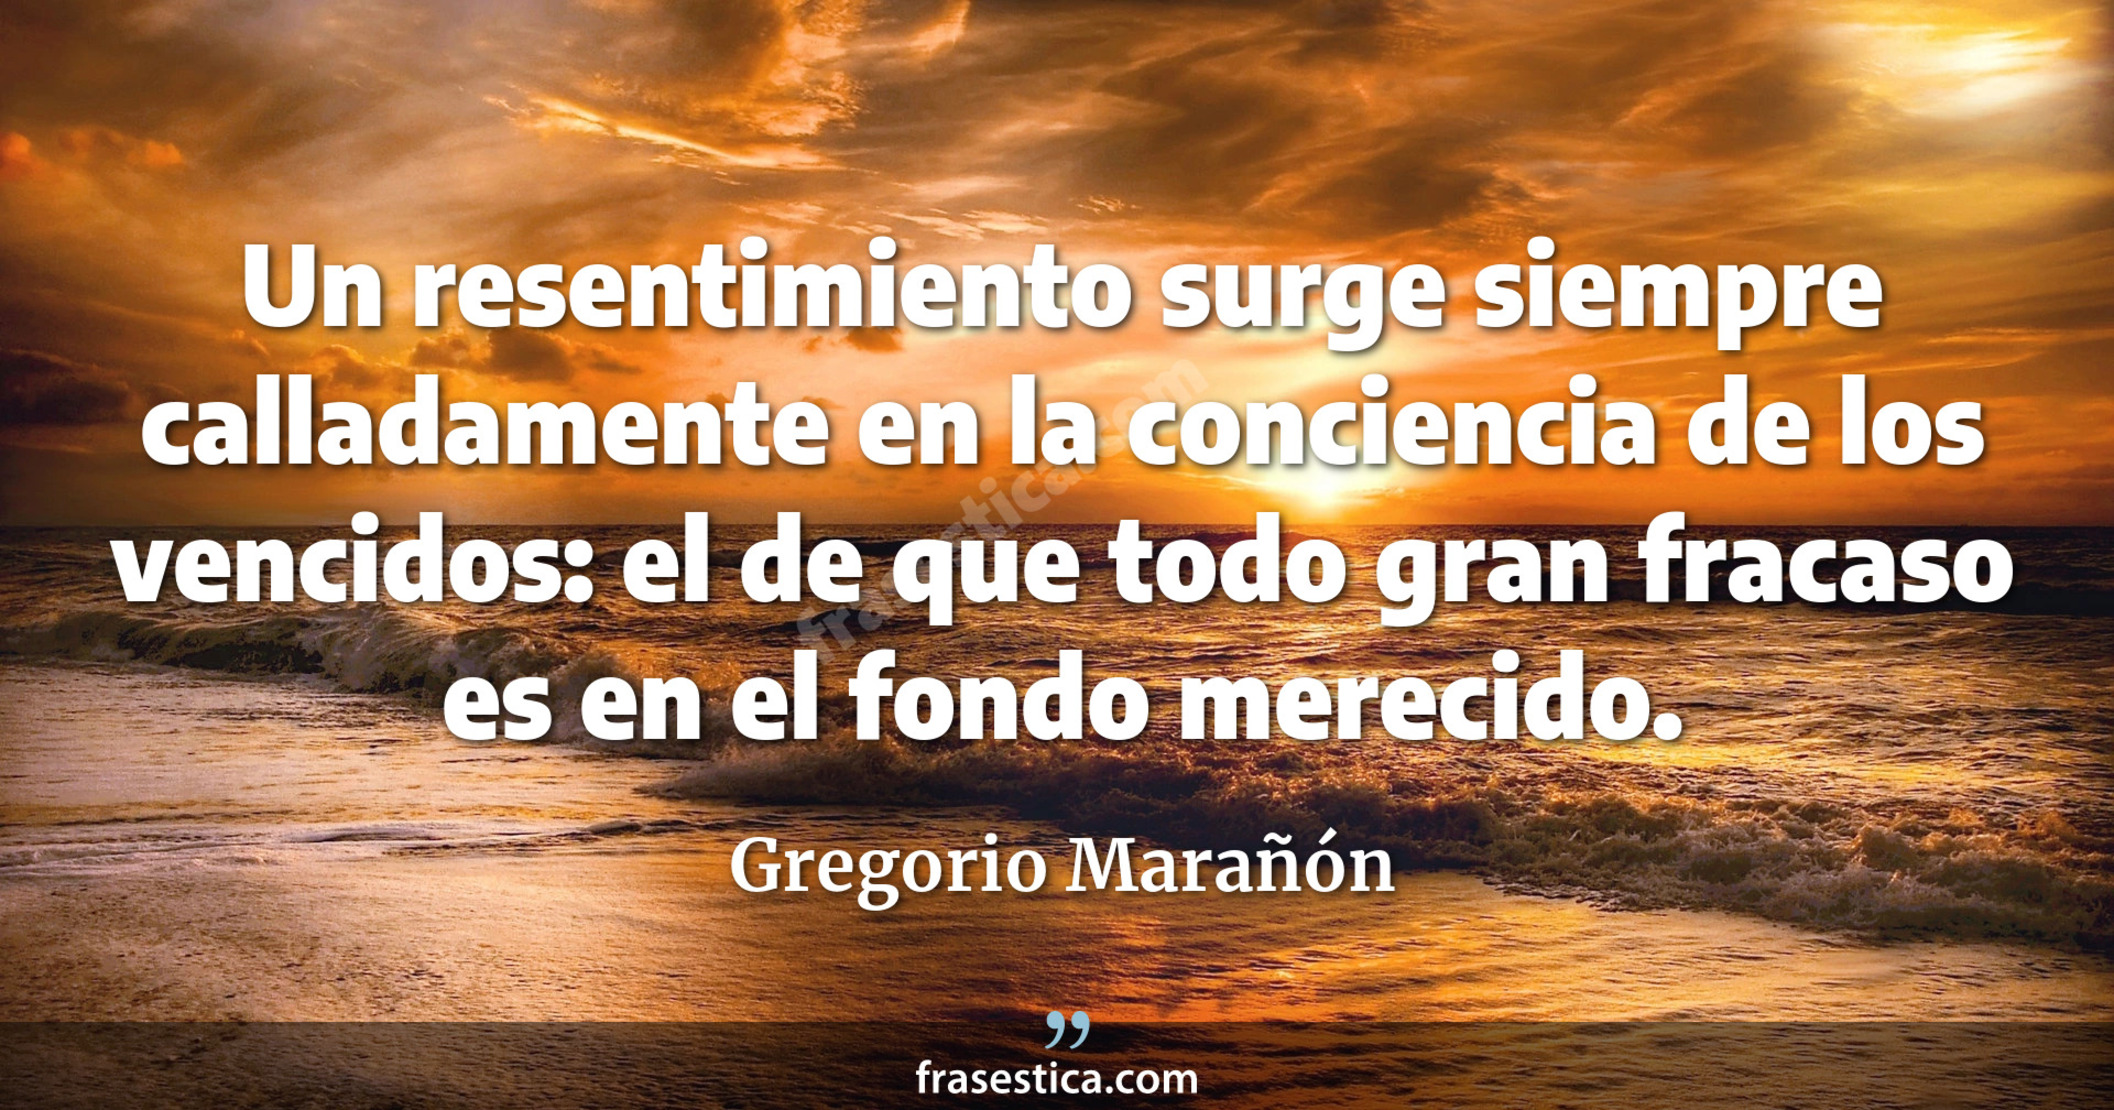 Un resentimiento surge siempre calladamente en la conciencia de los vencidos: el de que todo gran fracaso es en el fondo merecido. - Gregorio Marañón